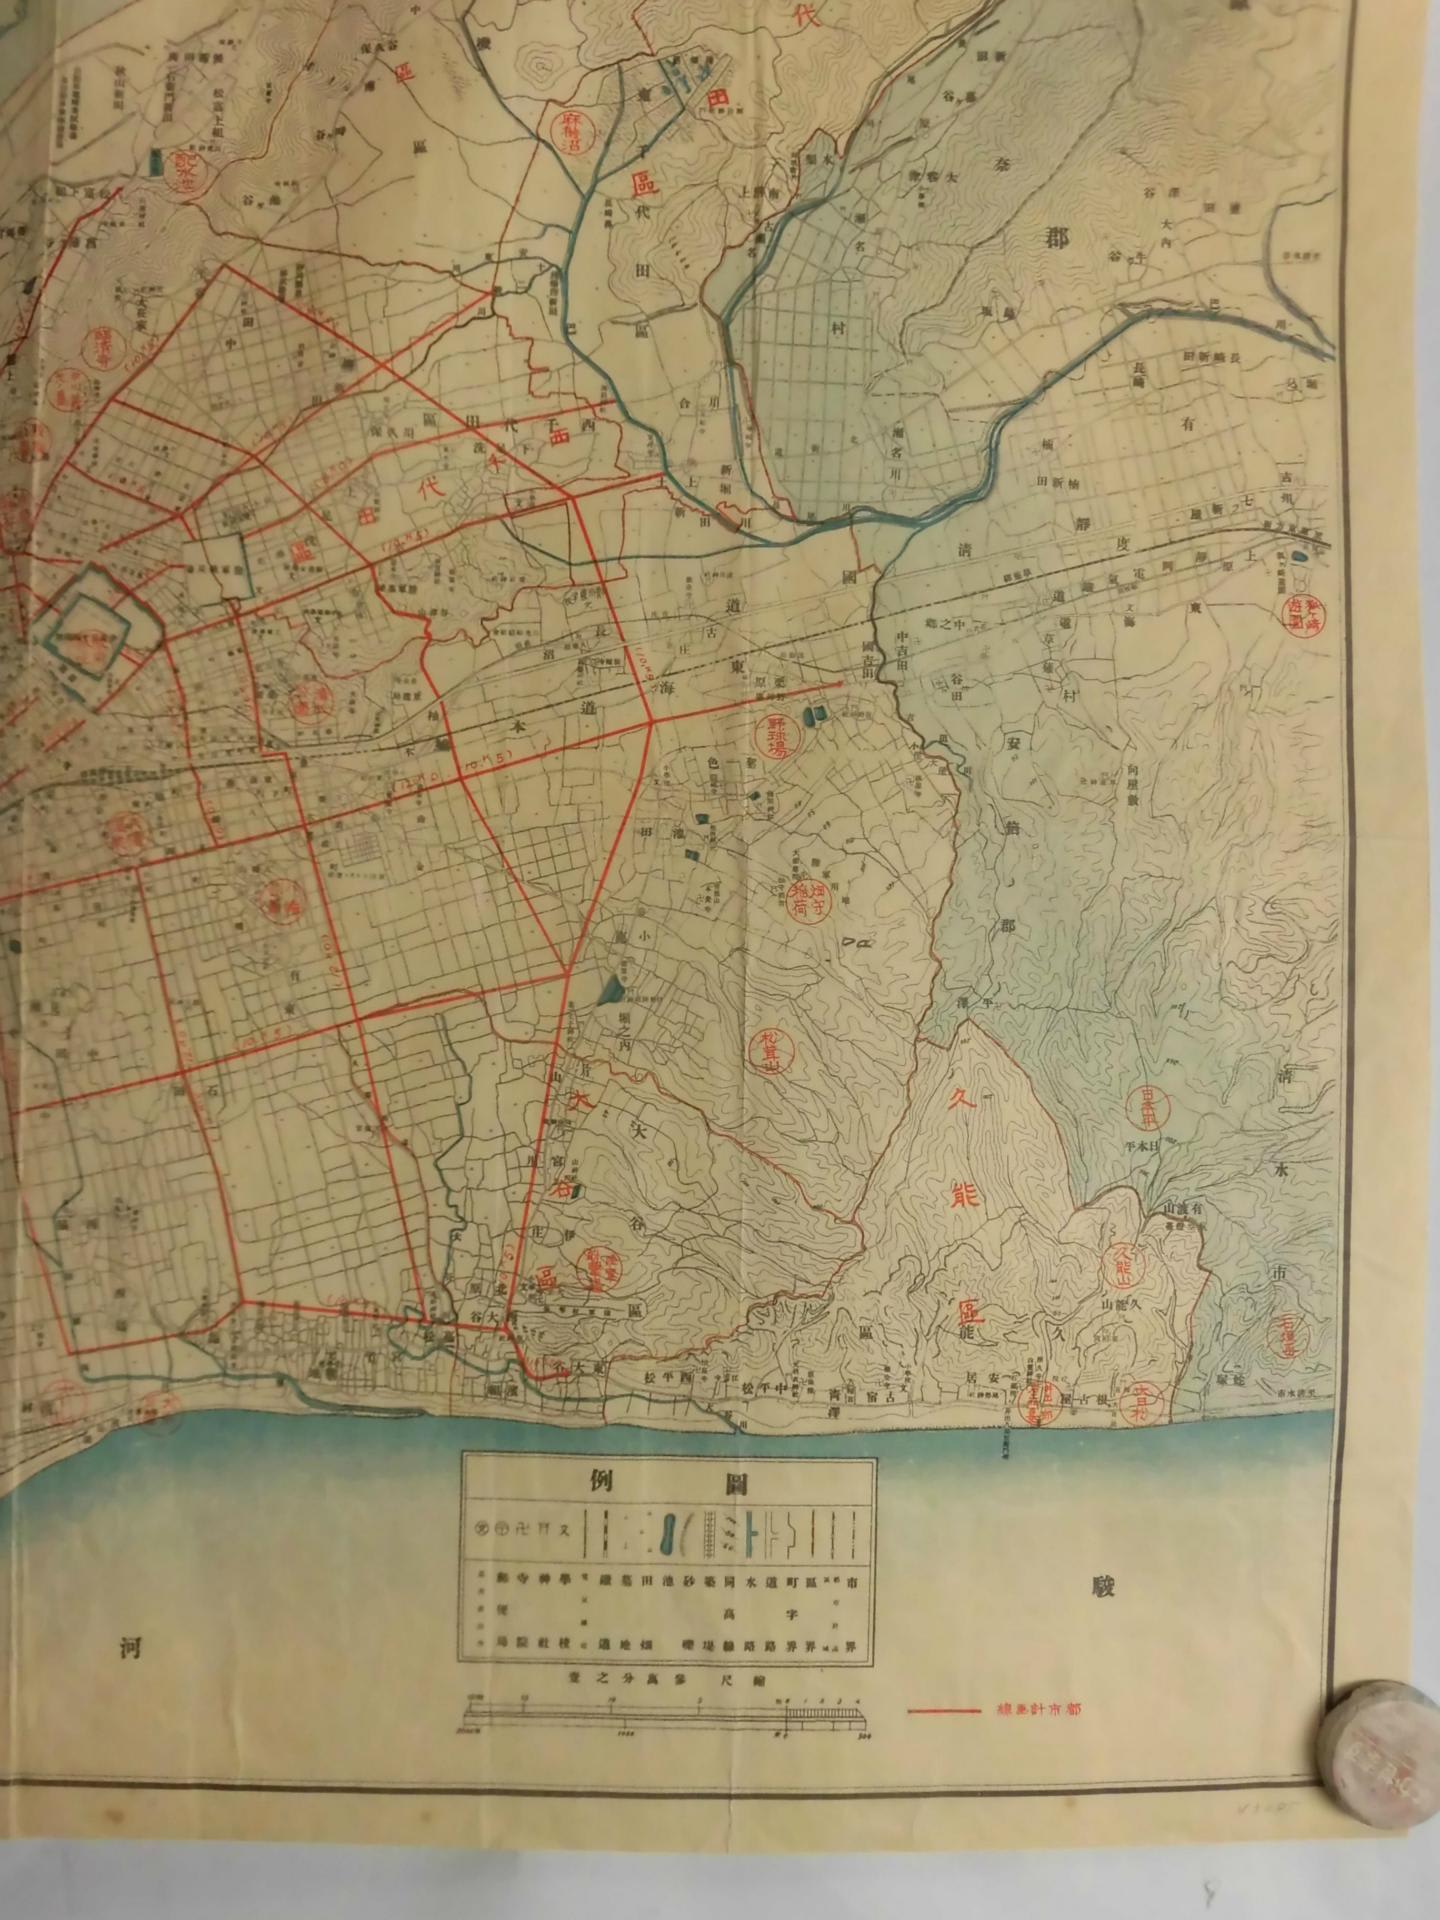 静岡市全圖 昭和12年 - 新日本古地図学会